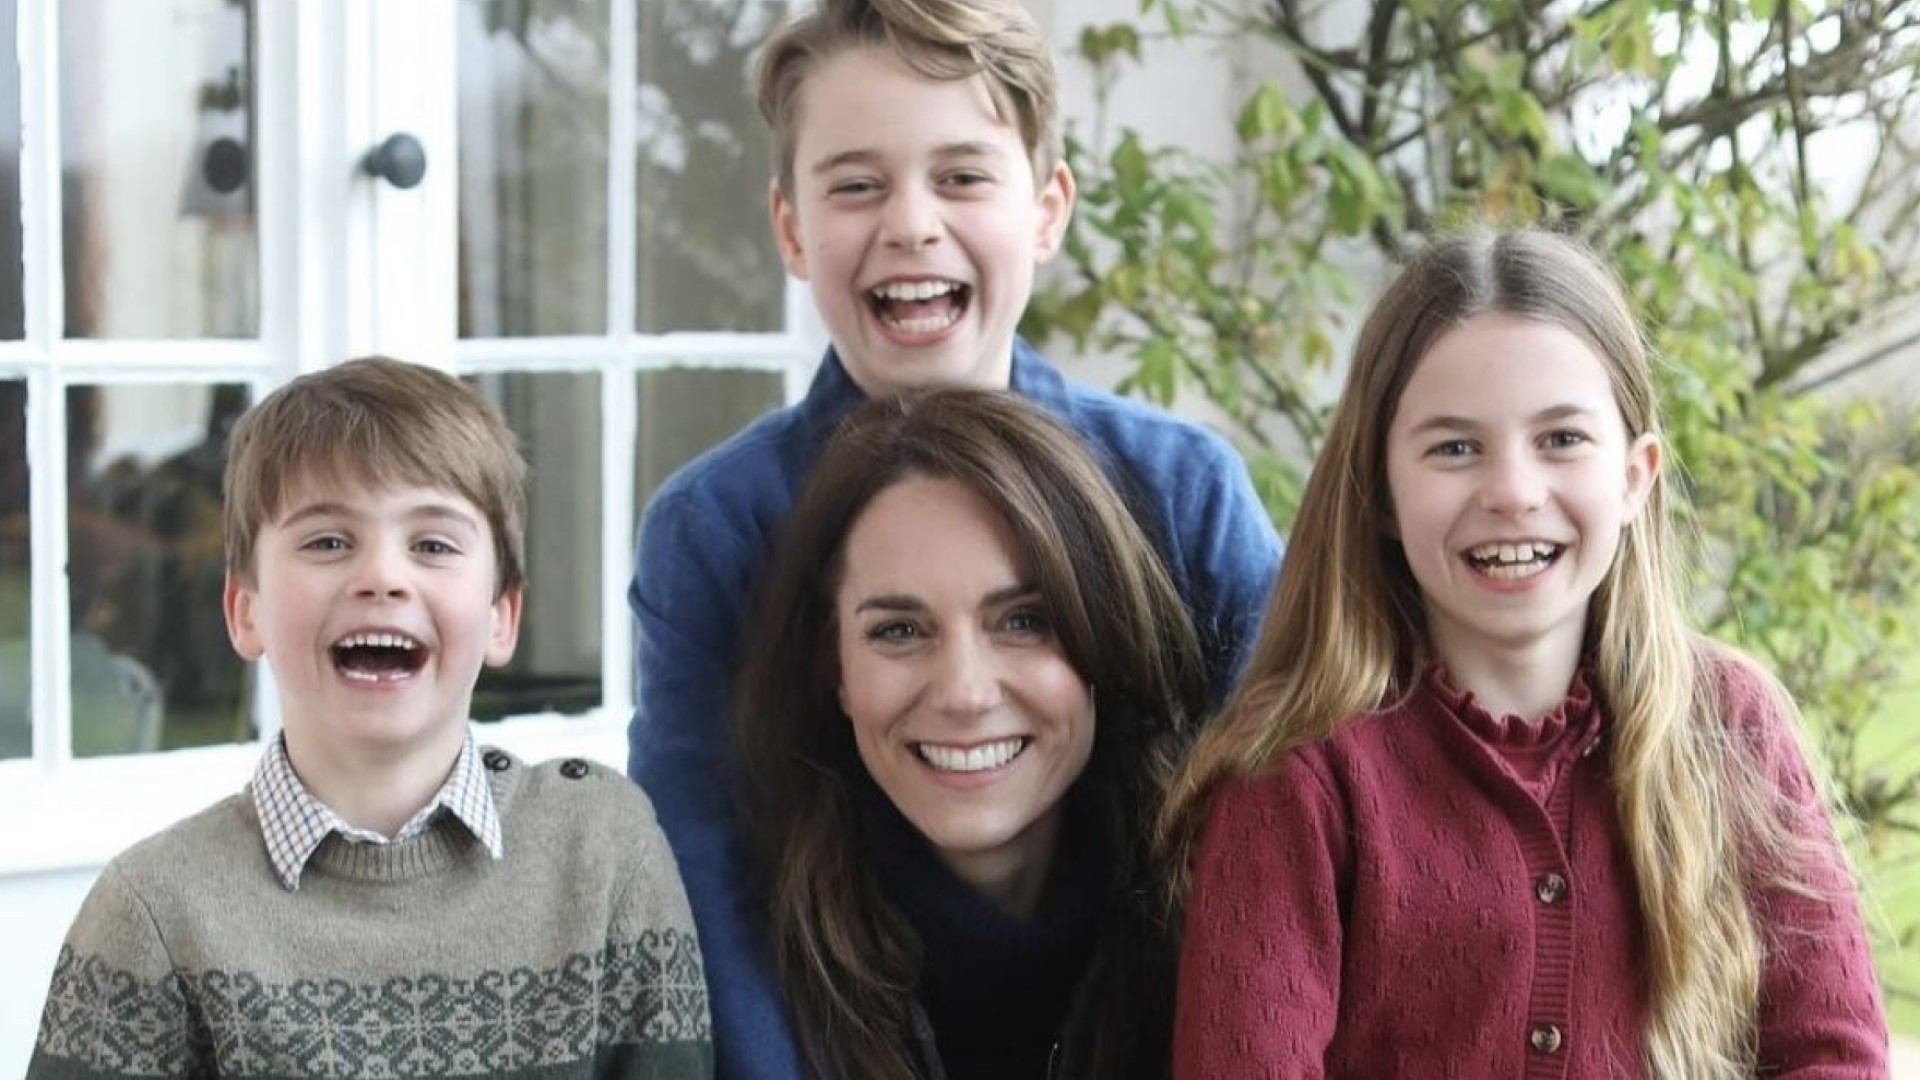 Kates Foto-Fiasko: Die Reaktionen auf das seltsame Familienfoto der Prinzessin